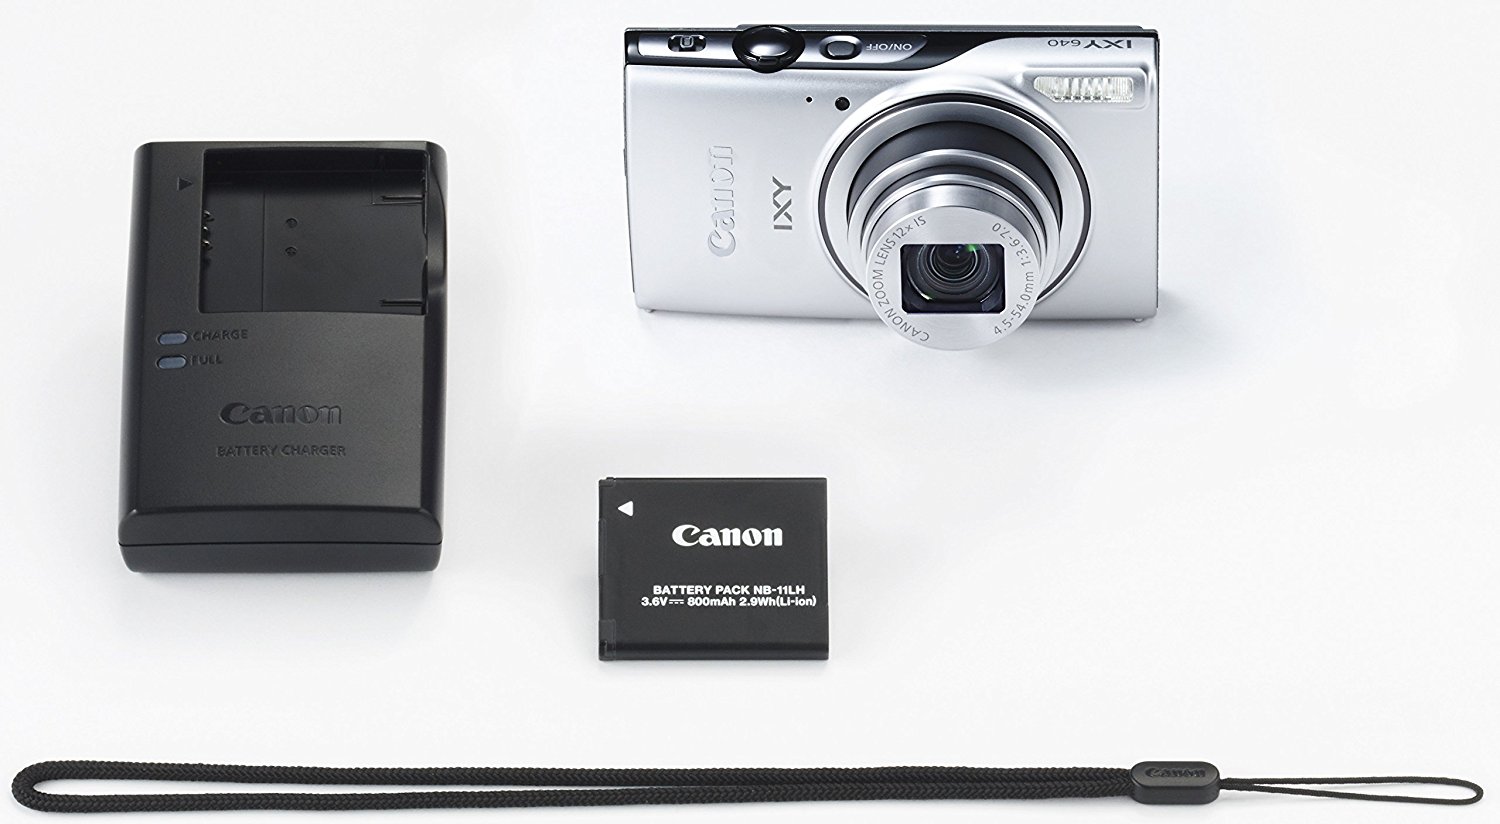 Handbuch für Canon ixy 810 Digitalkamera